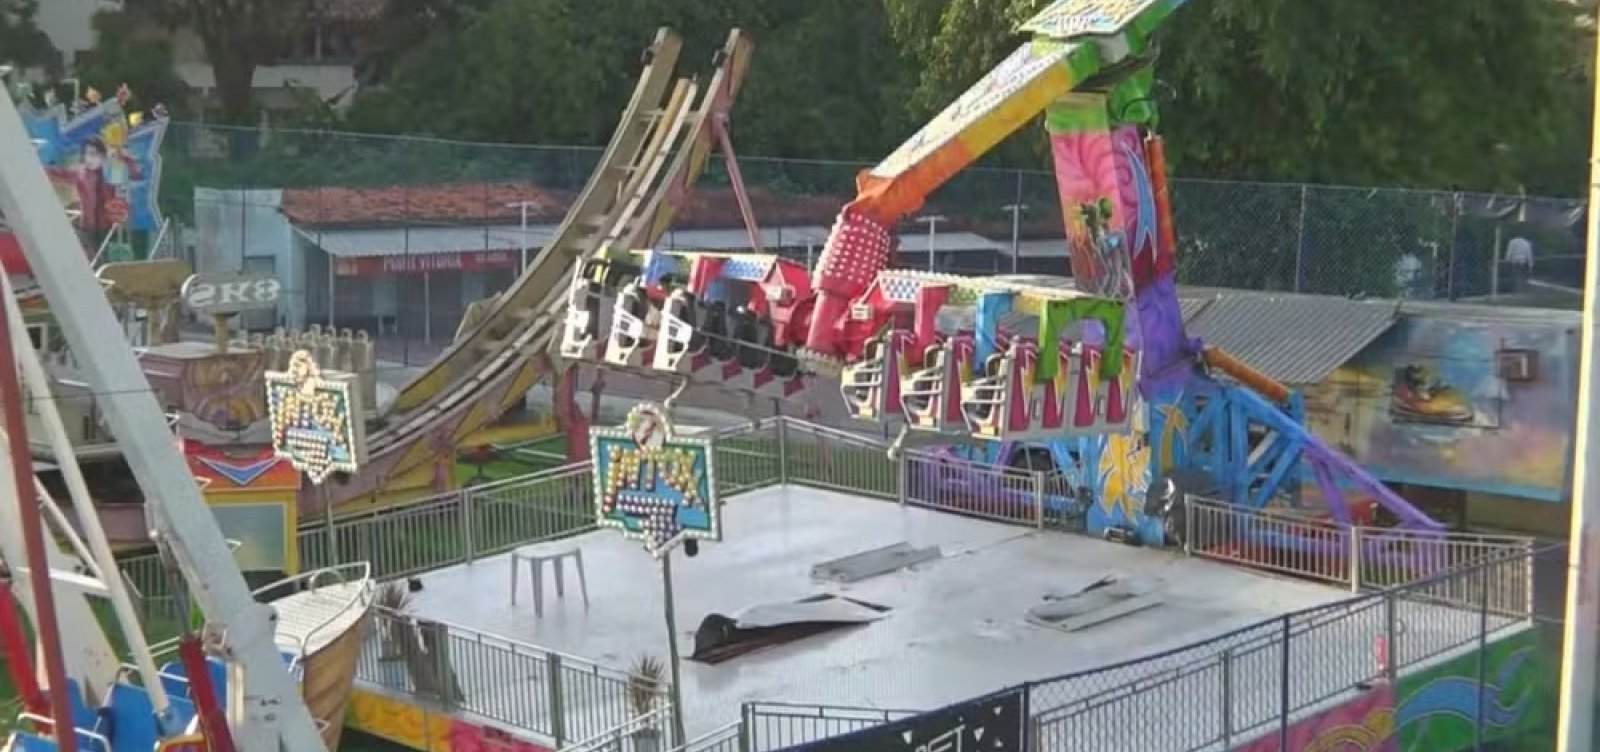 Após acidente com dois irmãos, parque de diversões em Cajazeiras é interditado